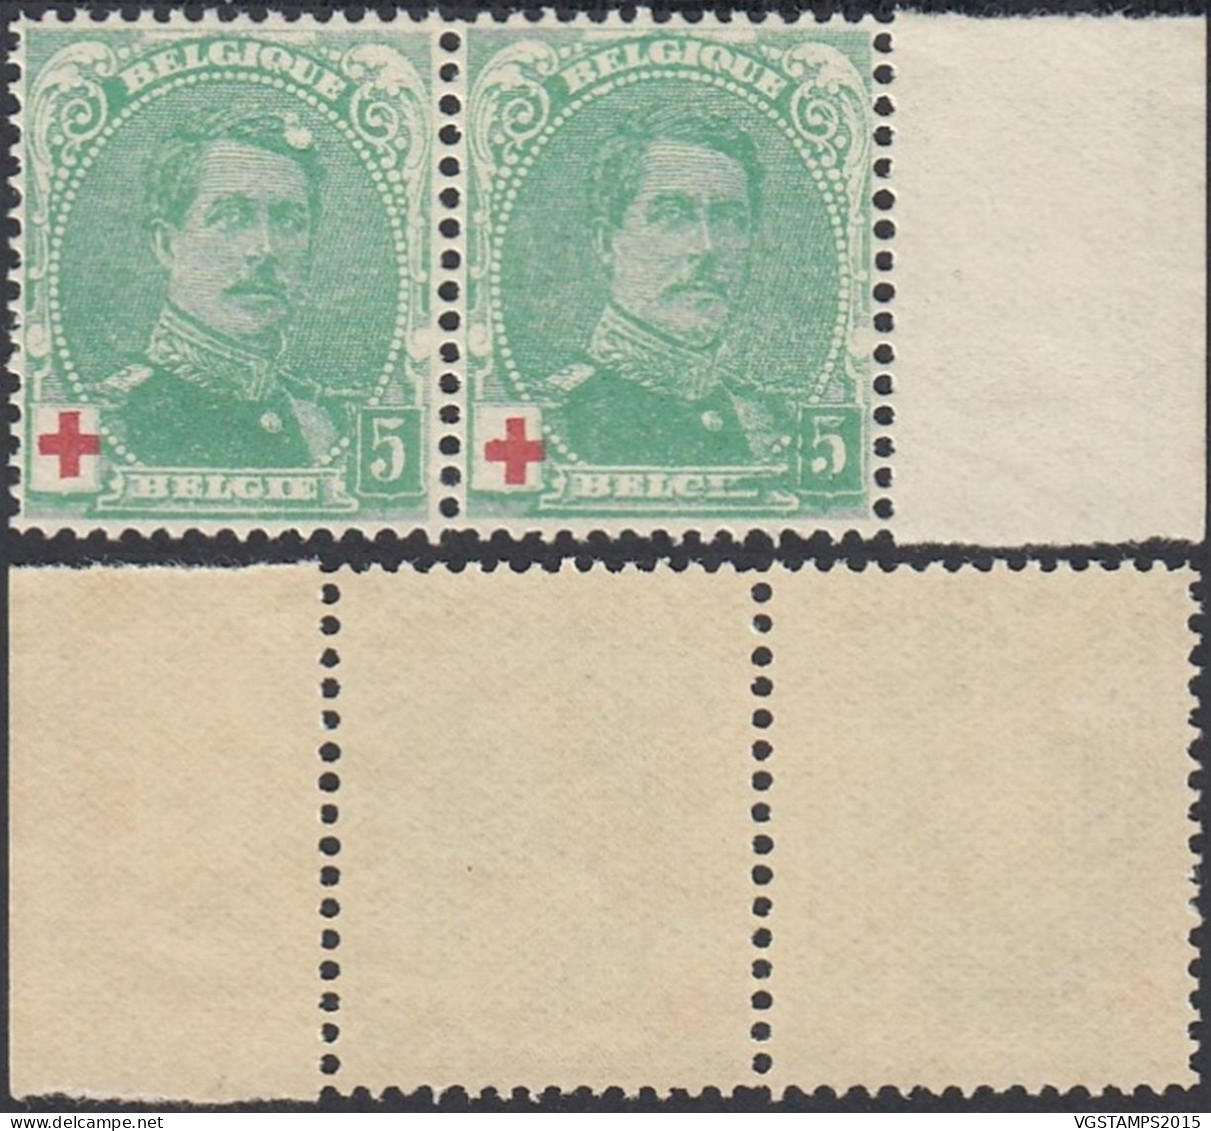 Belgique 1914 - Timbres Neufs. COB Nr.: 129 .A Paire  Dont 1 Avec Variété................... (EB) AR-02050 - 1914-1915 Red Cross